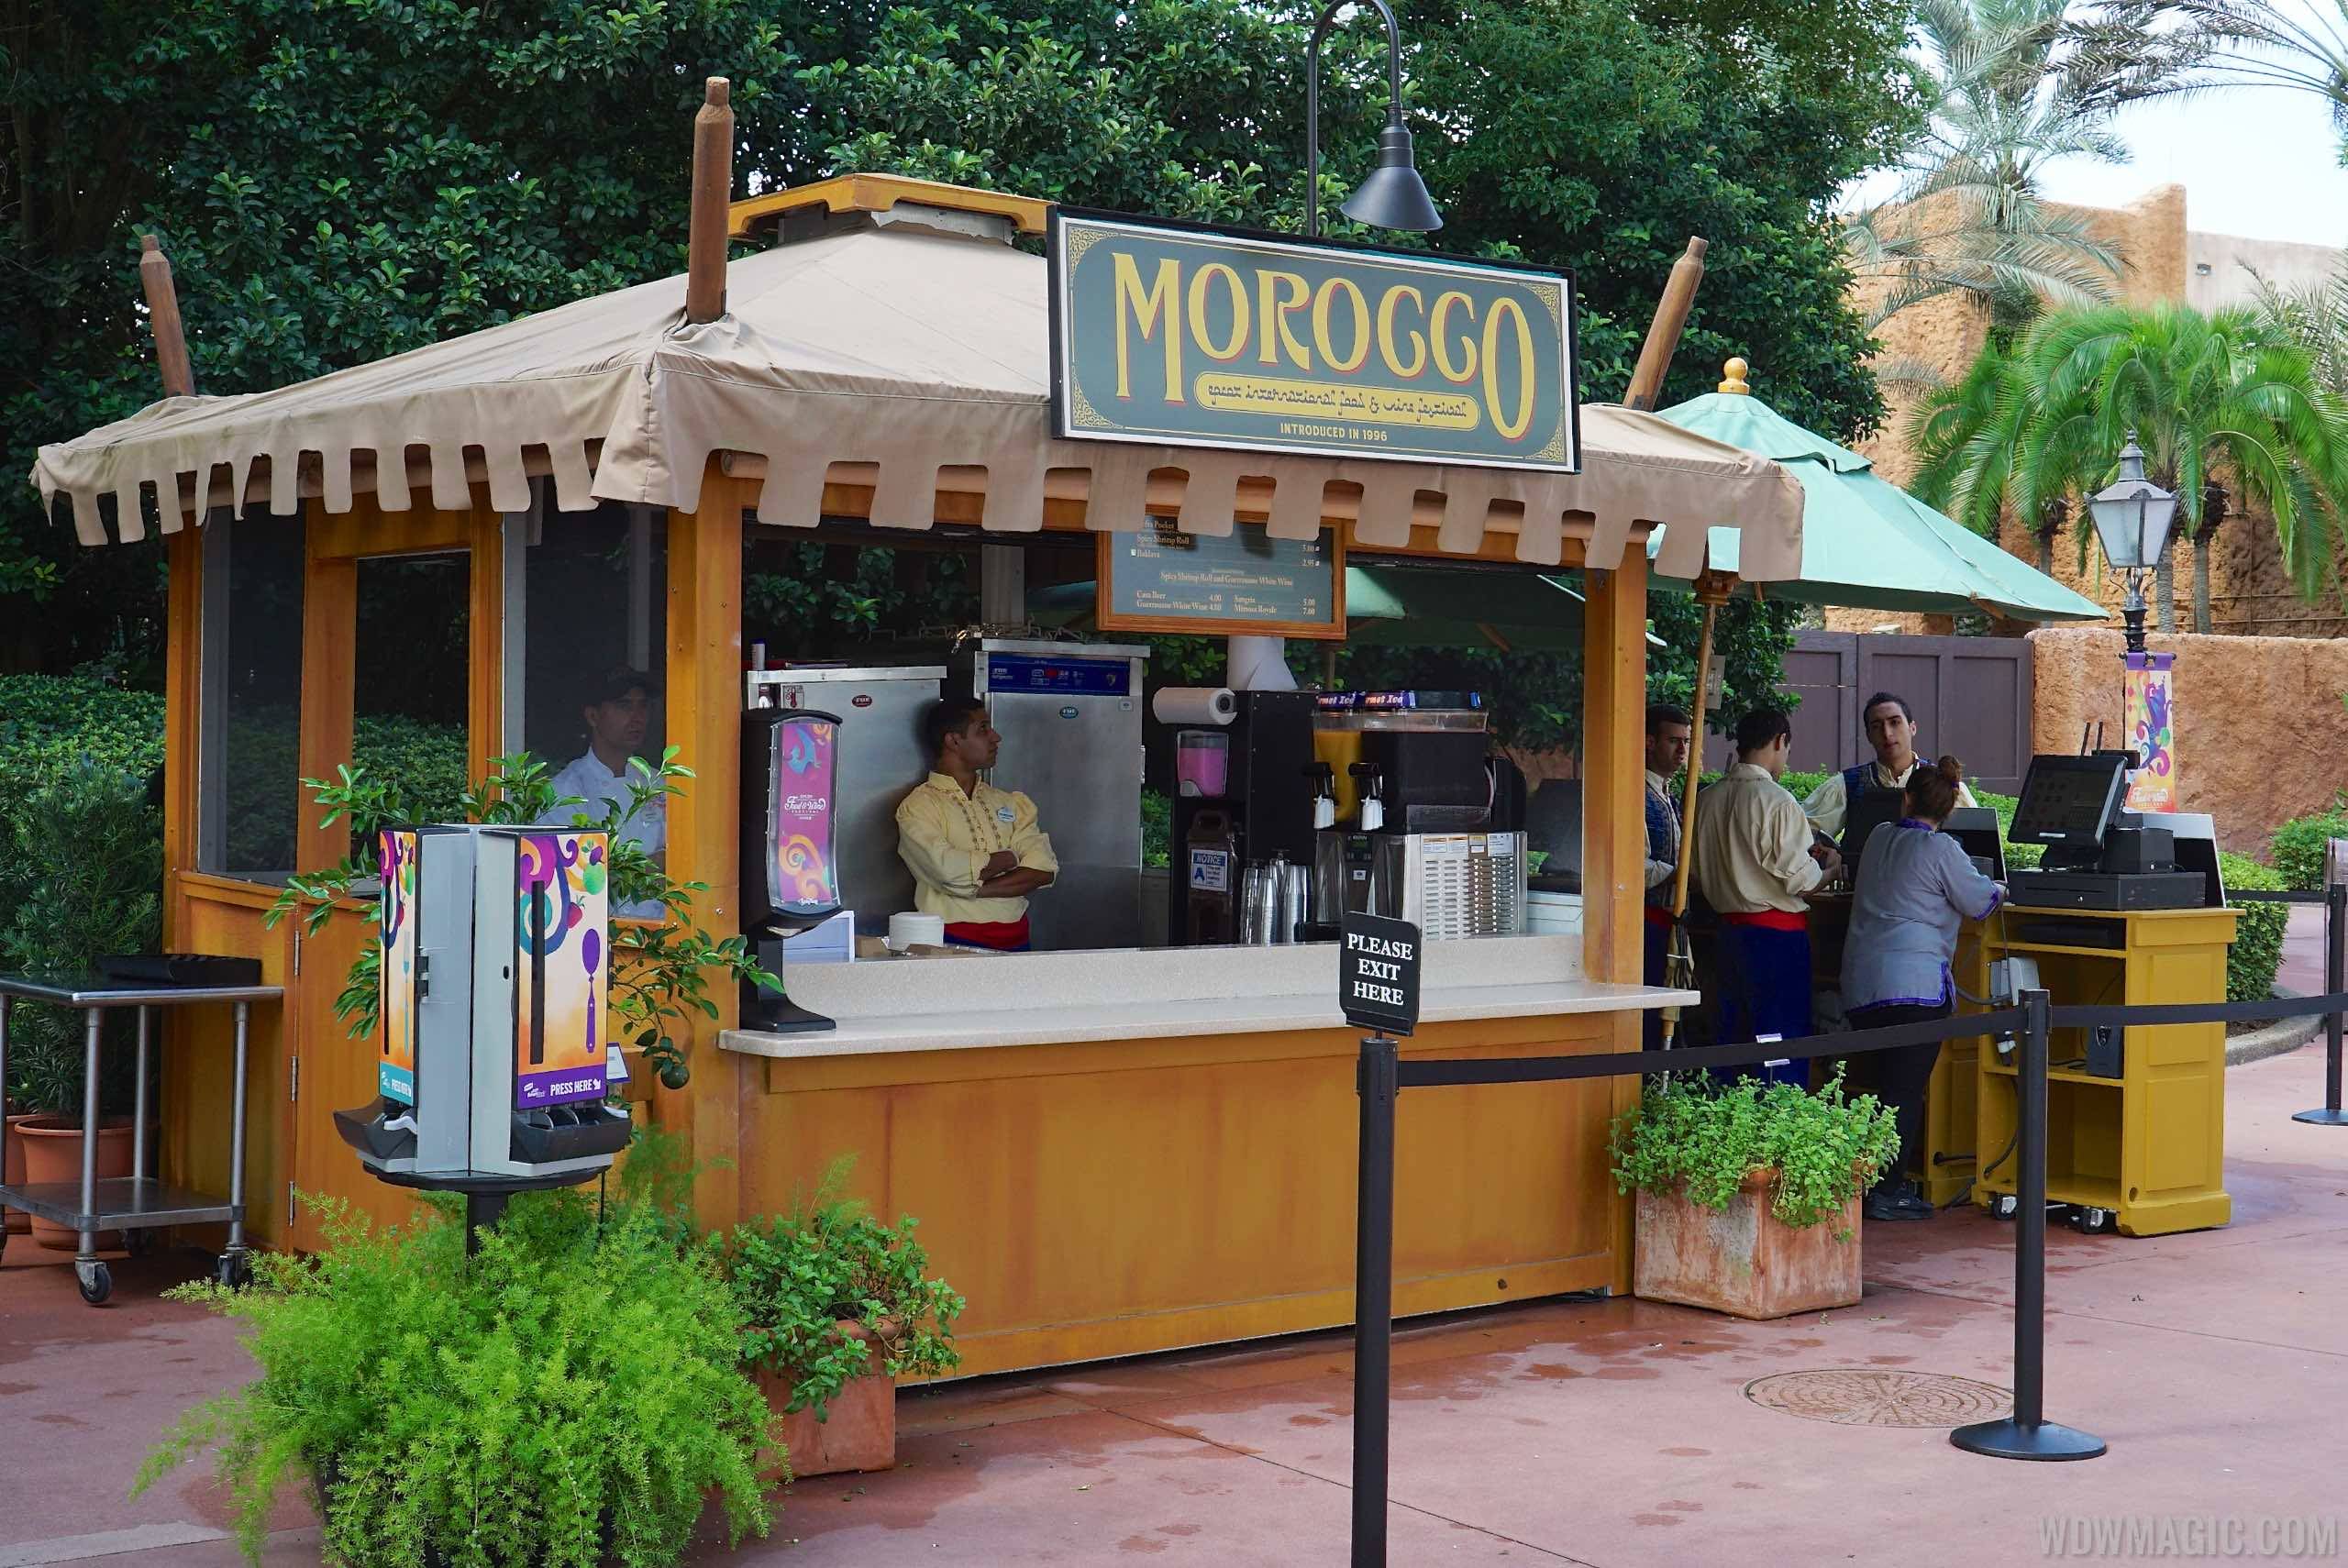 Morocco Food and Wine kiosk